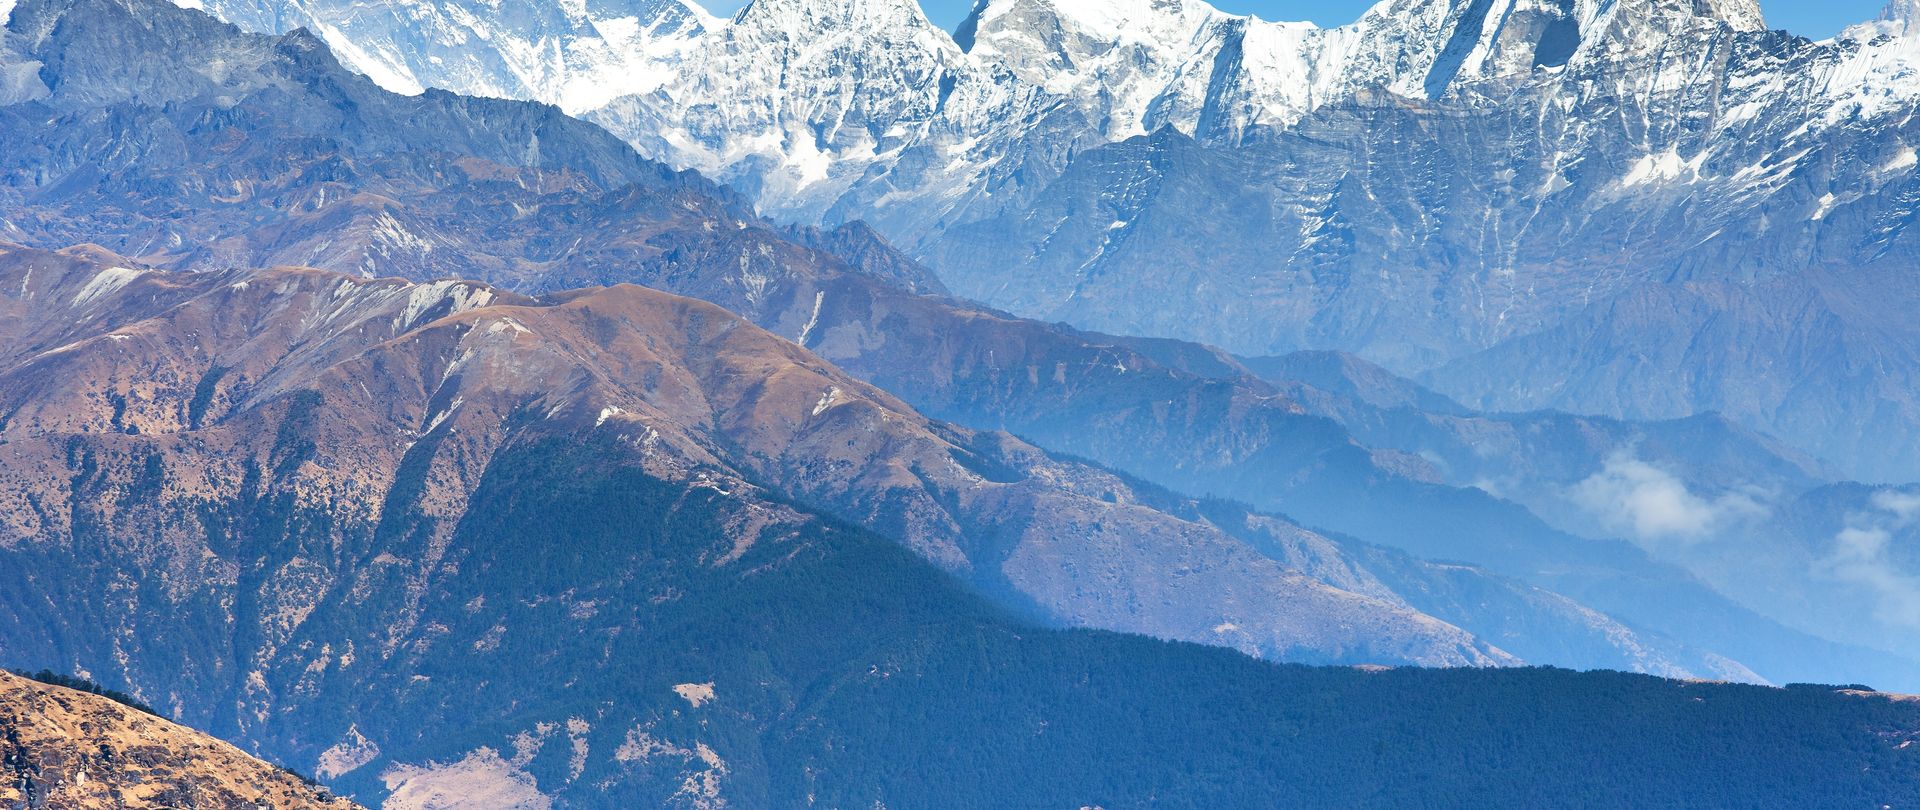 Stage de survie au Nepal, au pied de l'Everest